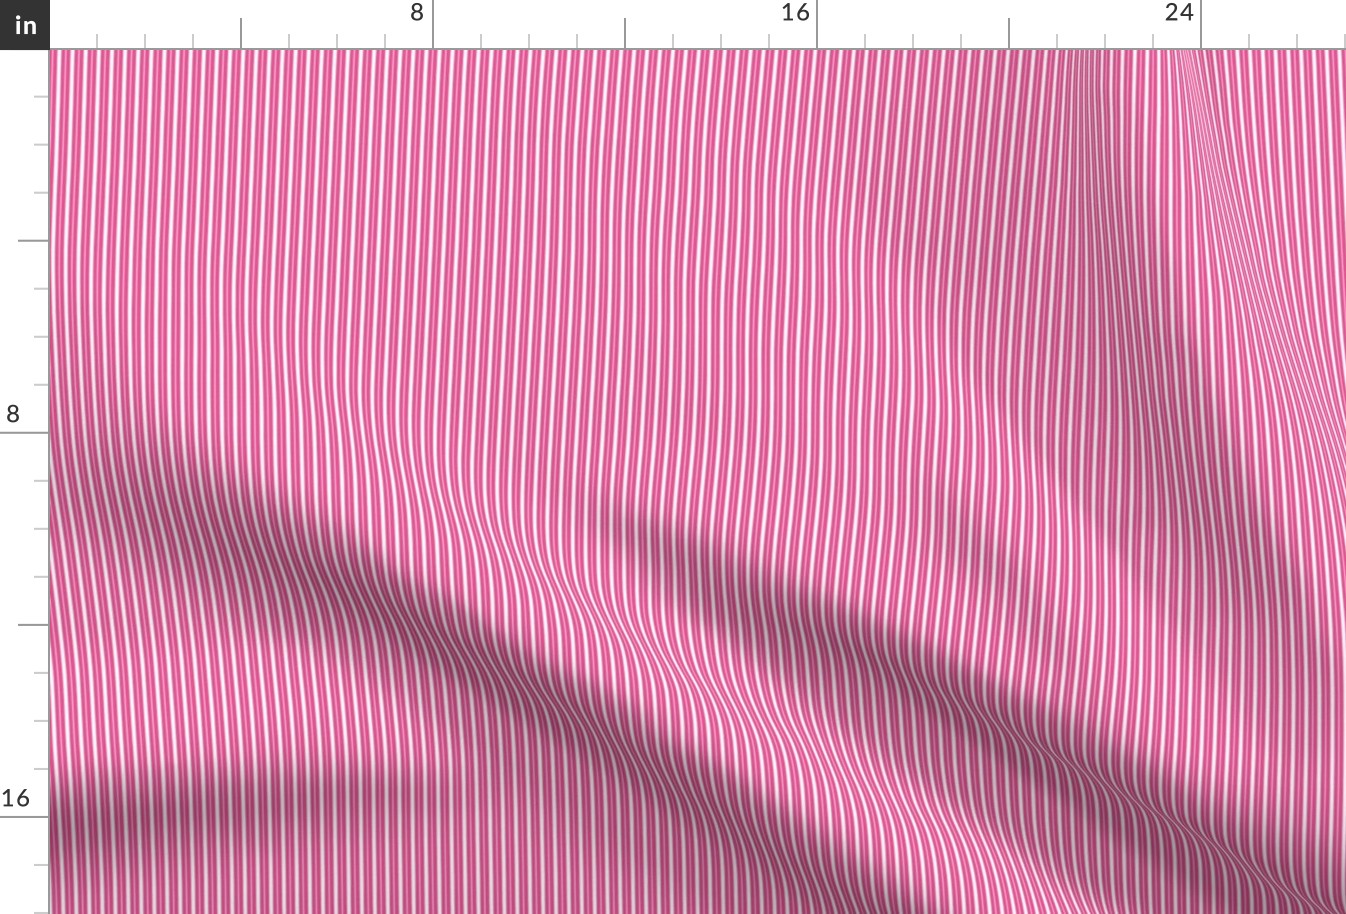 Tiny Ticking Stripe Hot Pink